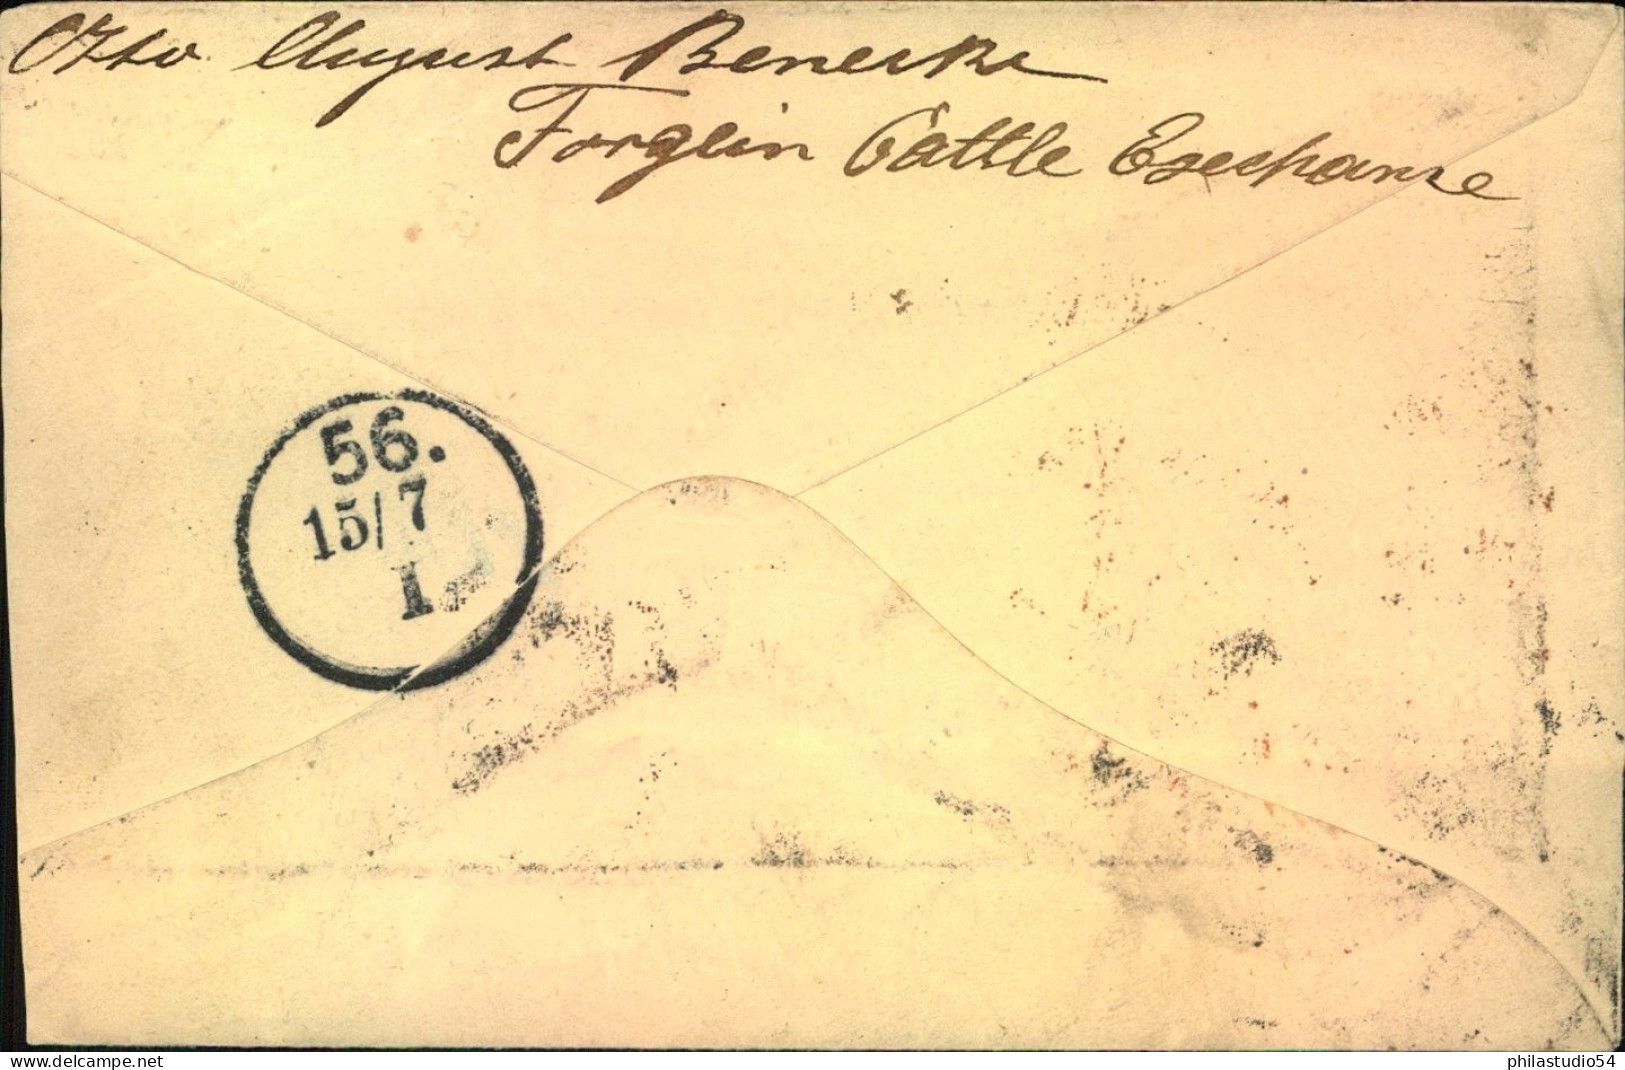 1900, Registered Letter To Berlin - Briefe U. Dokumente